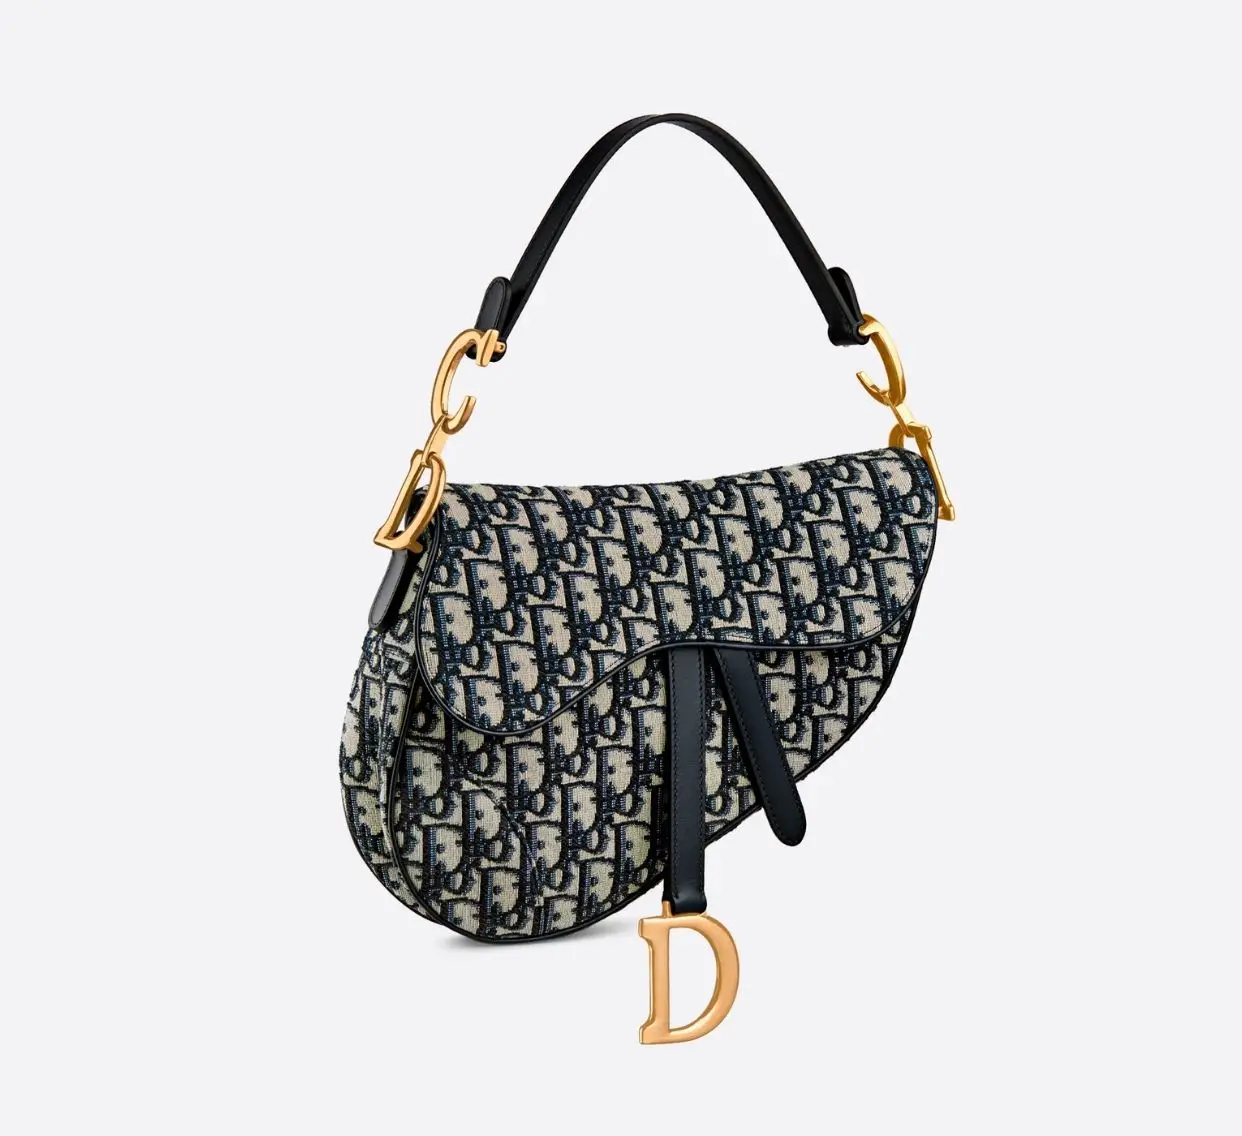 the Christian Dior saddle bag